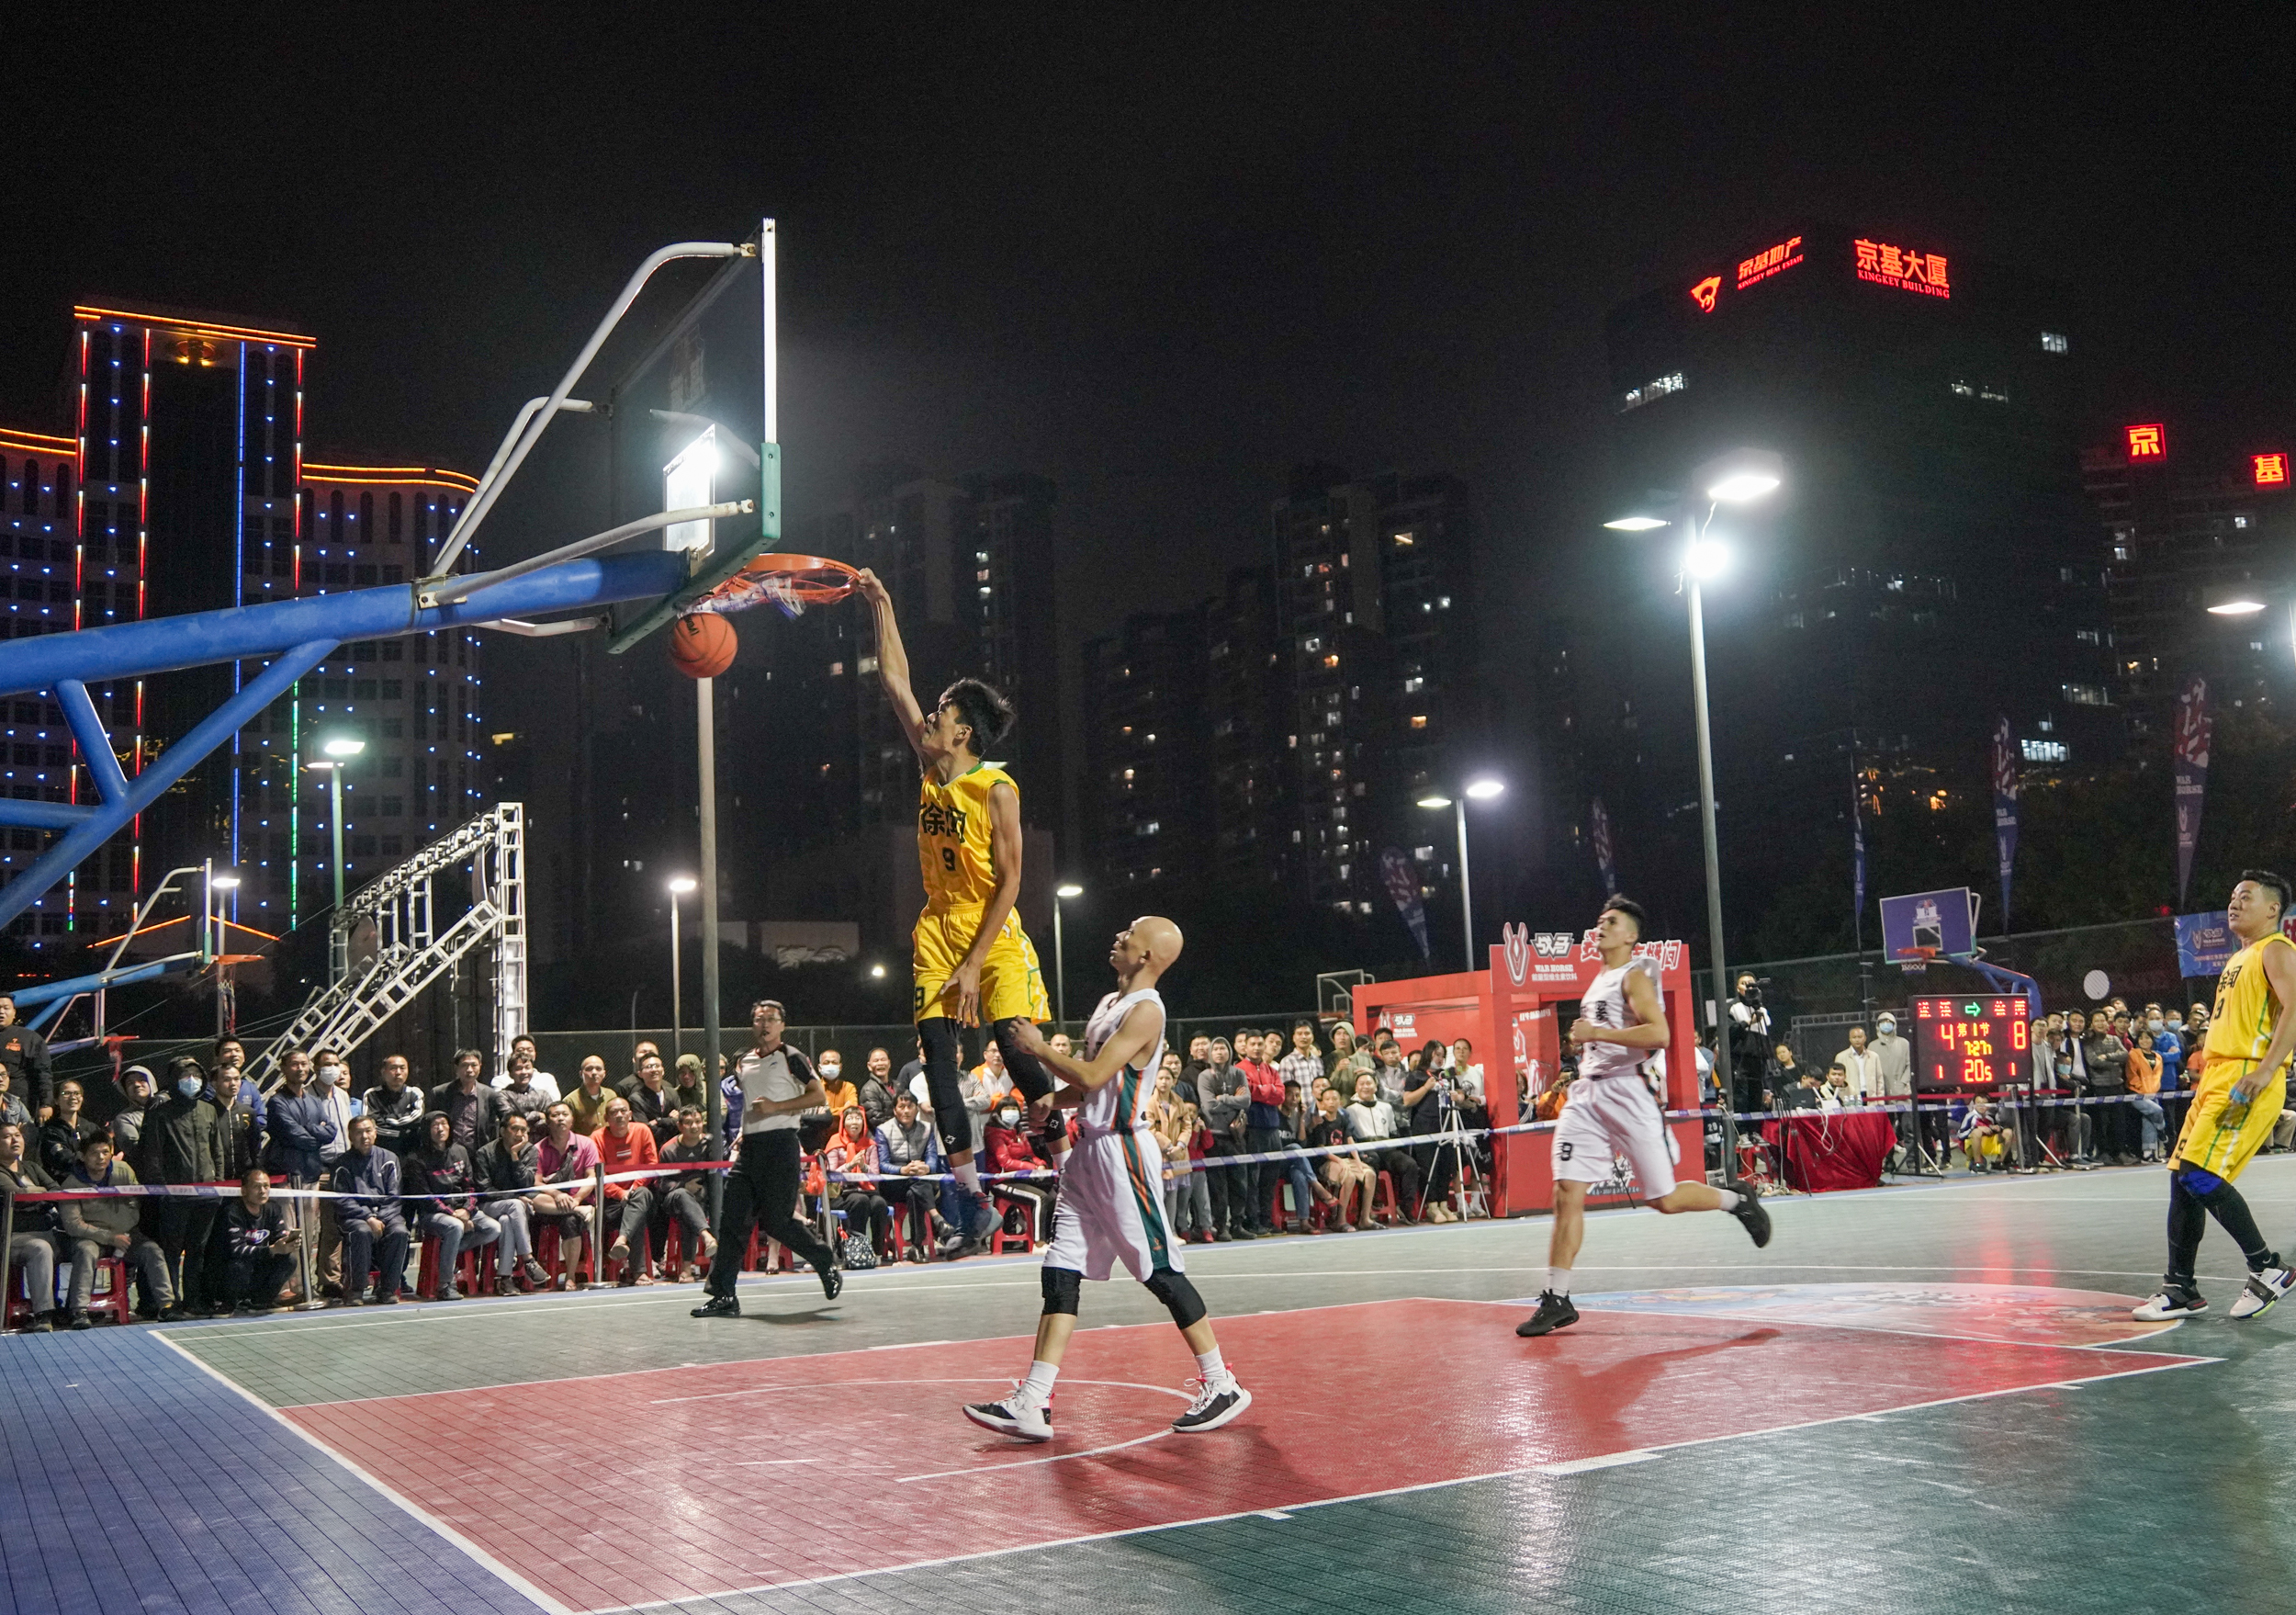 战马•2020湛江市男子篮球联赛火热开赛